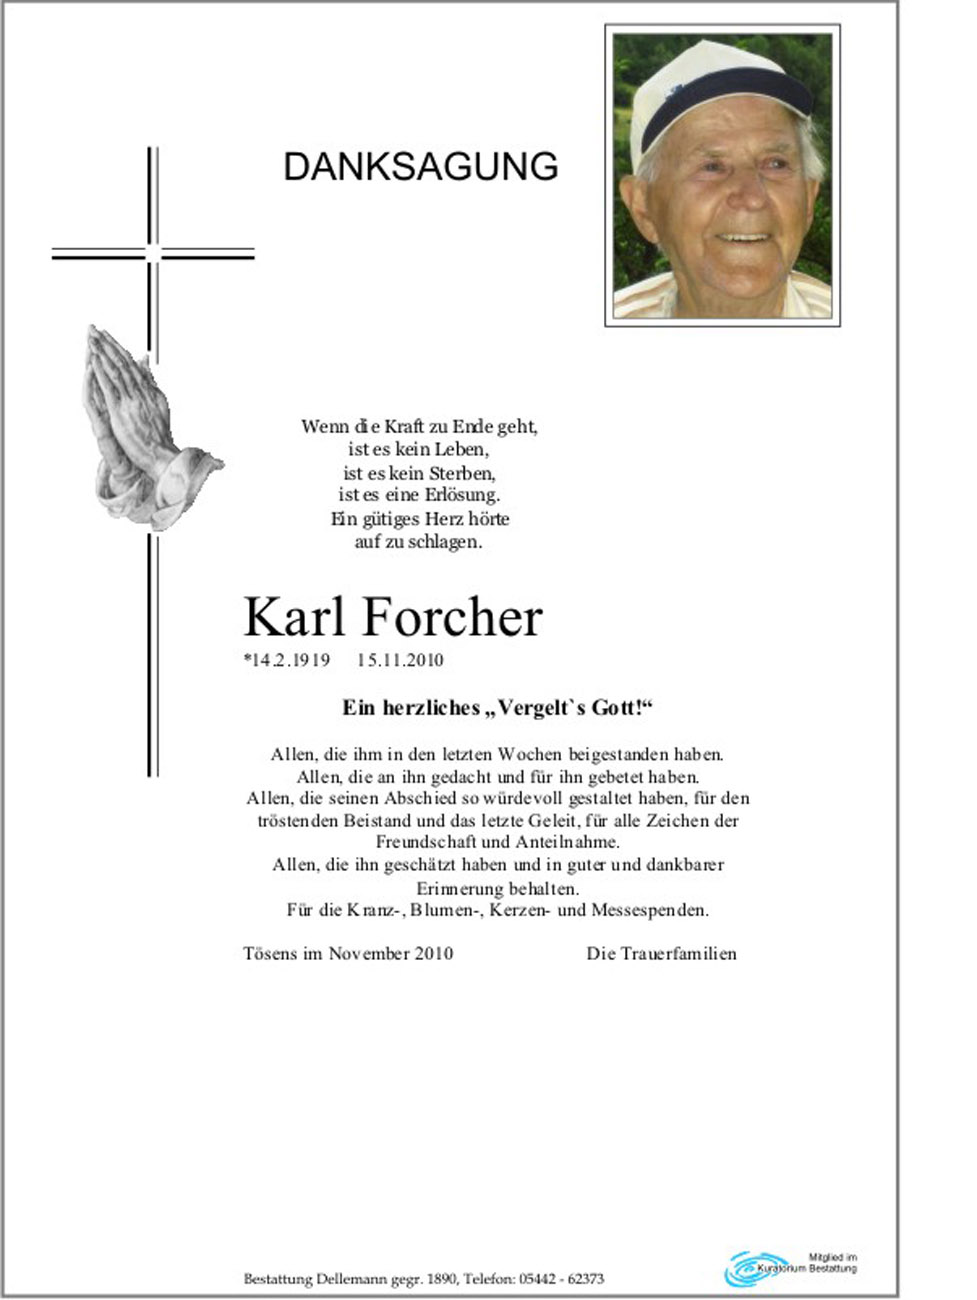   Karl Forcher